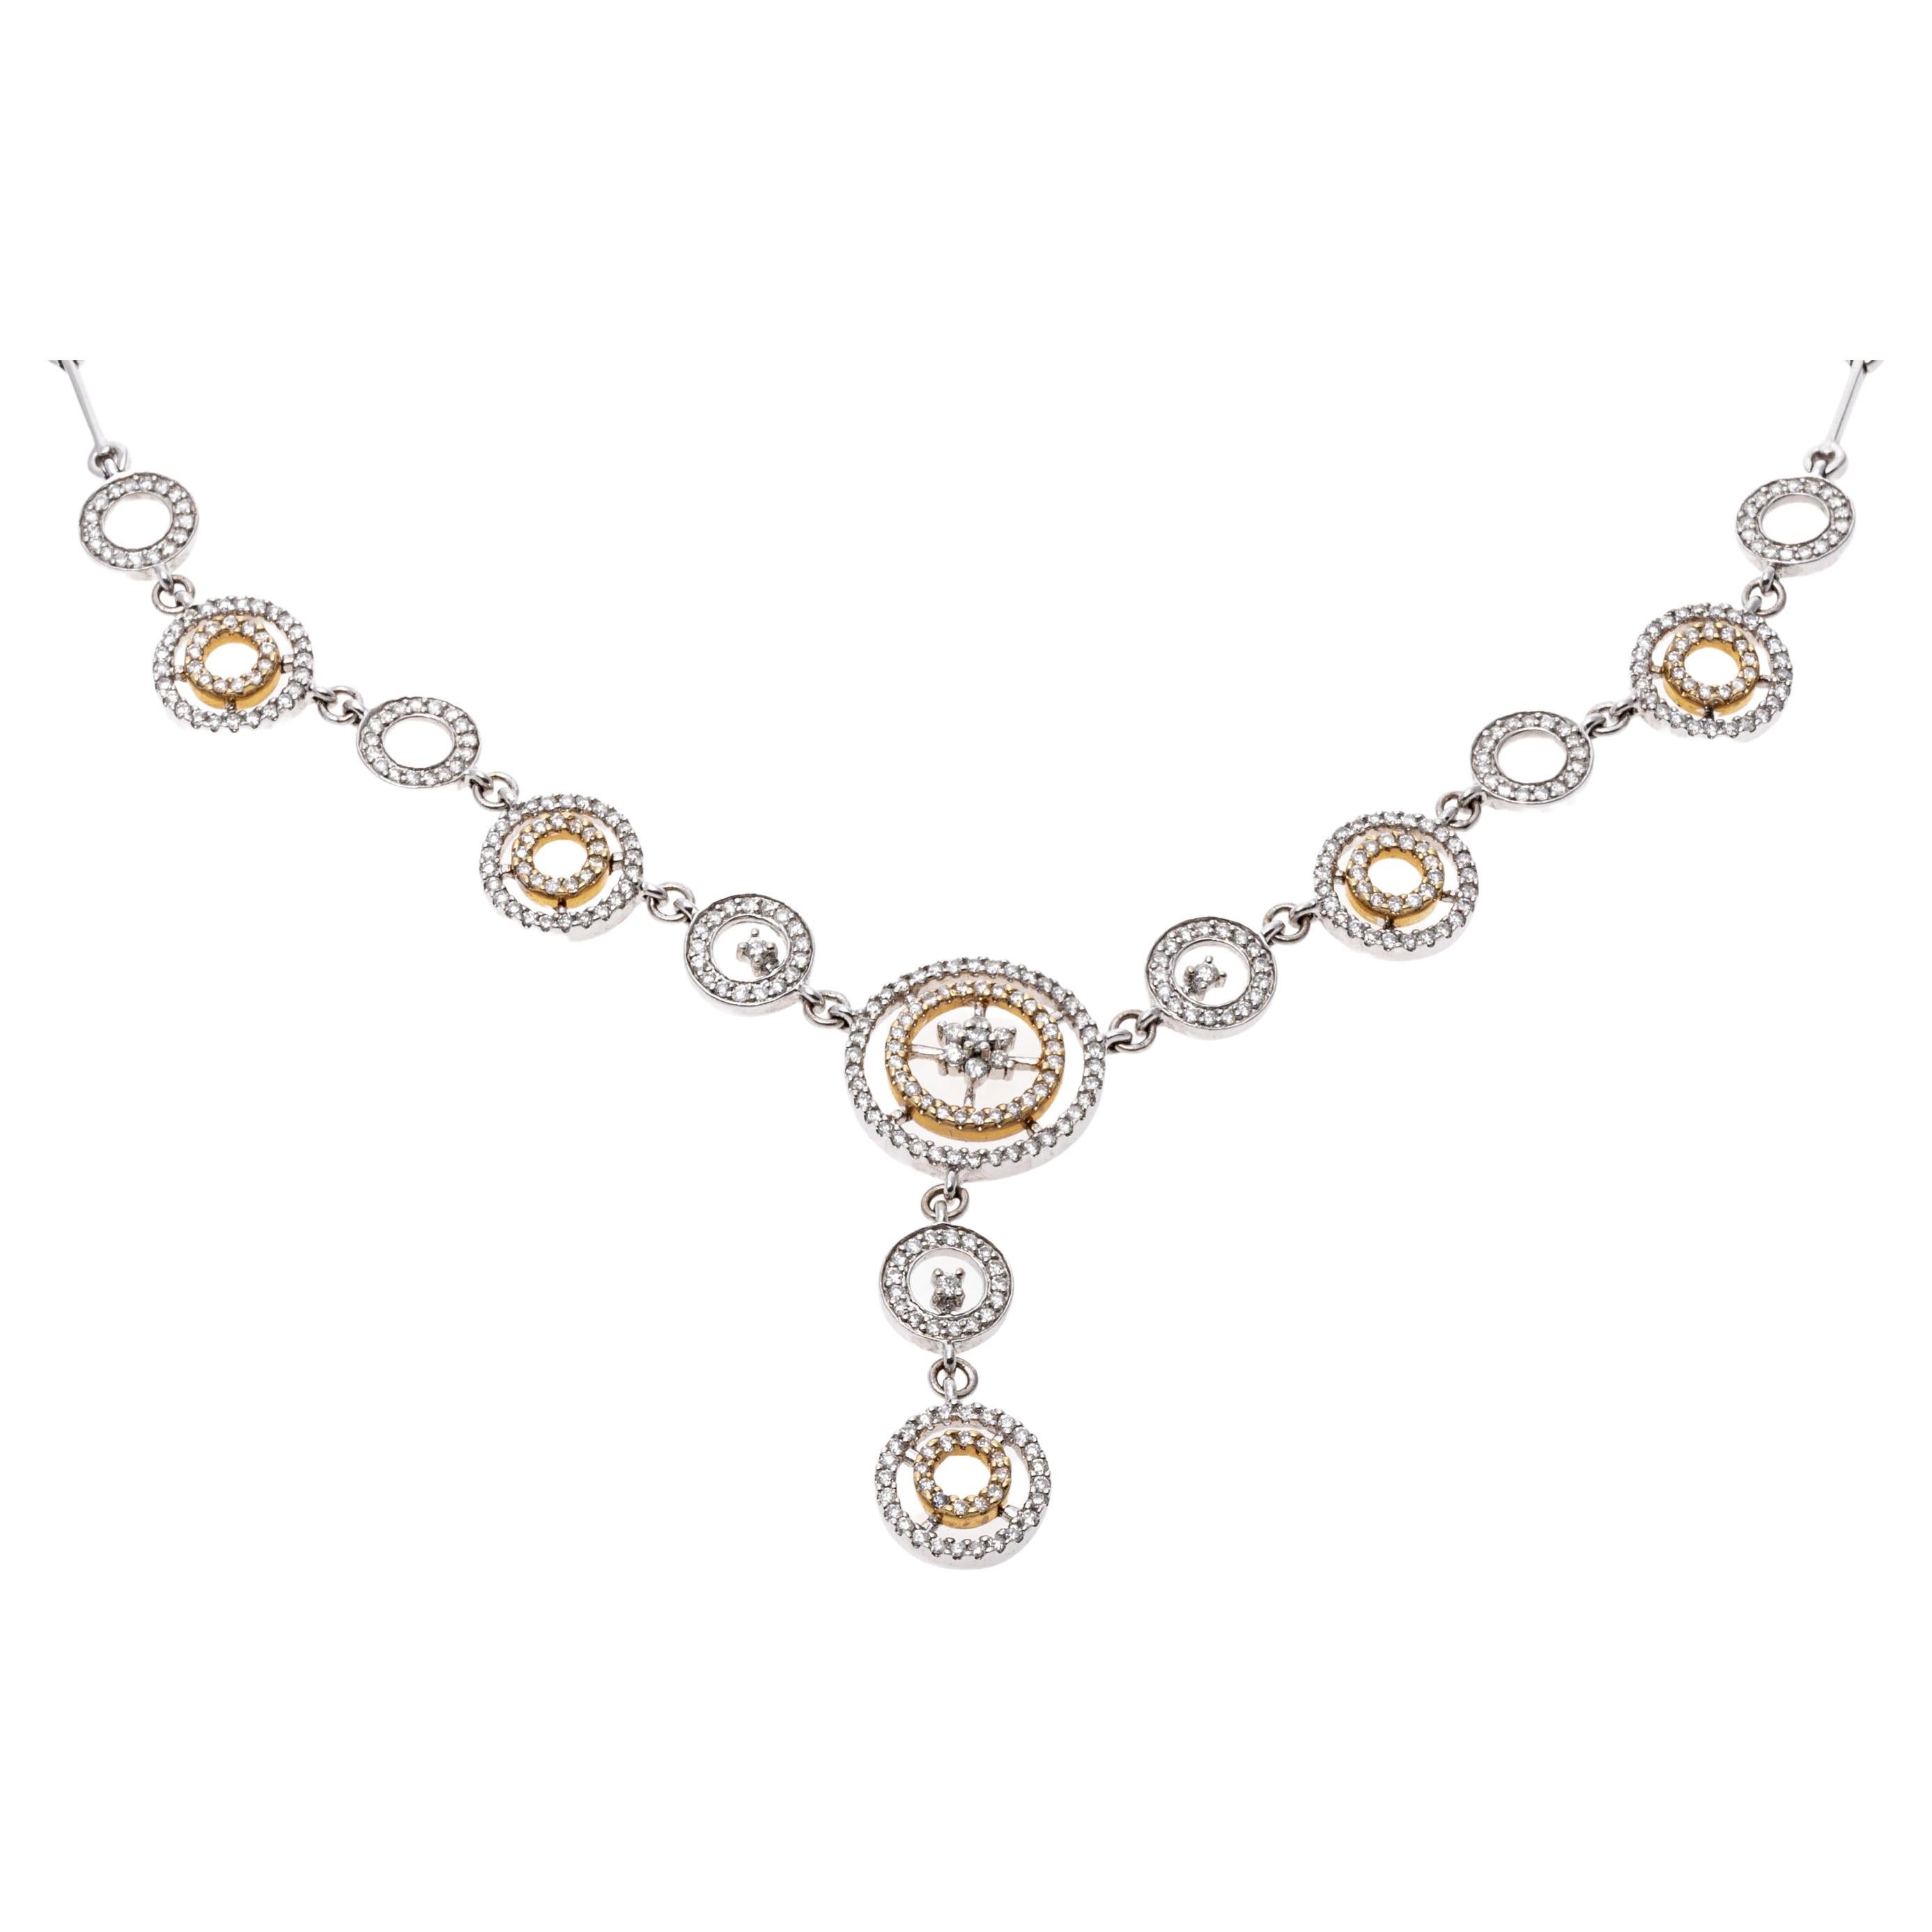 Halskette "Y" aus Weiß- und Gelbgold mit Diamanten, App. 2,10 TCW